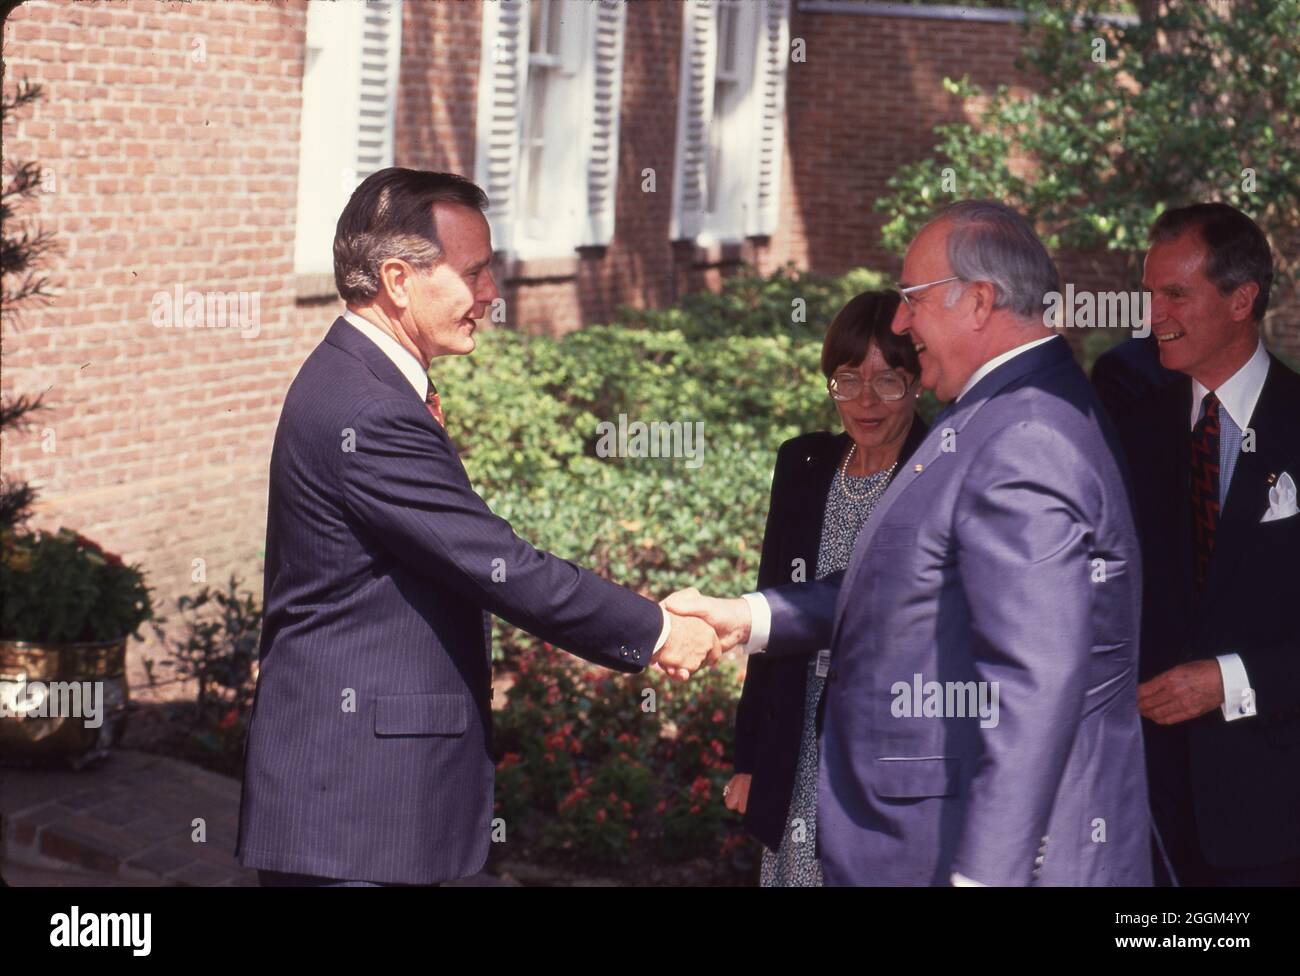 Houston Texas USA, Juli 1990: Präsident George H.W. Bush, links, begrüßt Bundeskanzler Helmut Kohl während einer Pressekonferenz auf dem Houston Economic Summit of Industrialized Nations. ©Bob Daemmrich Stockfoto